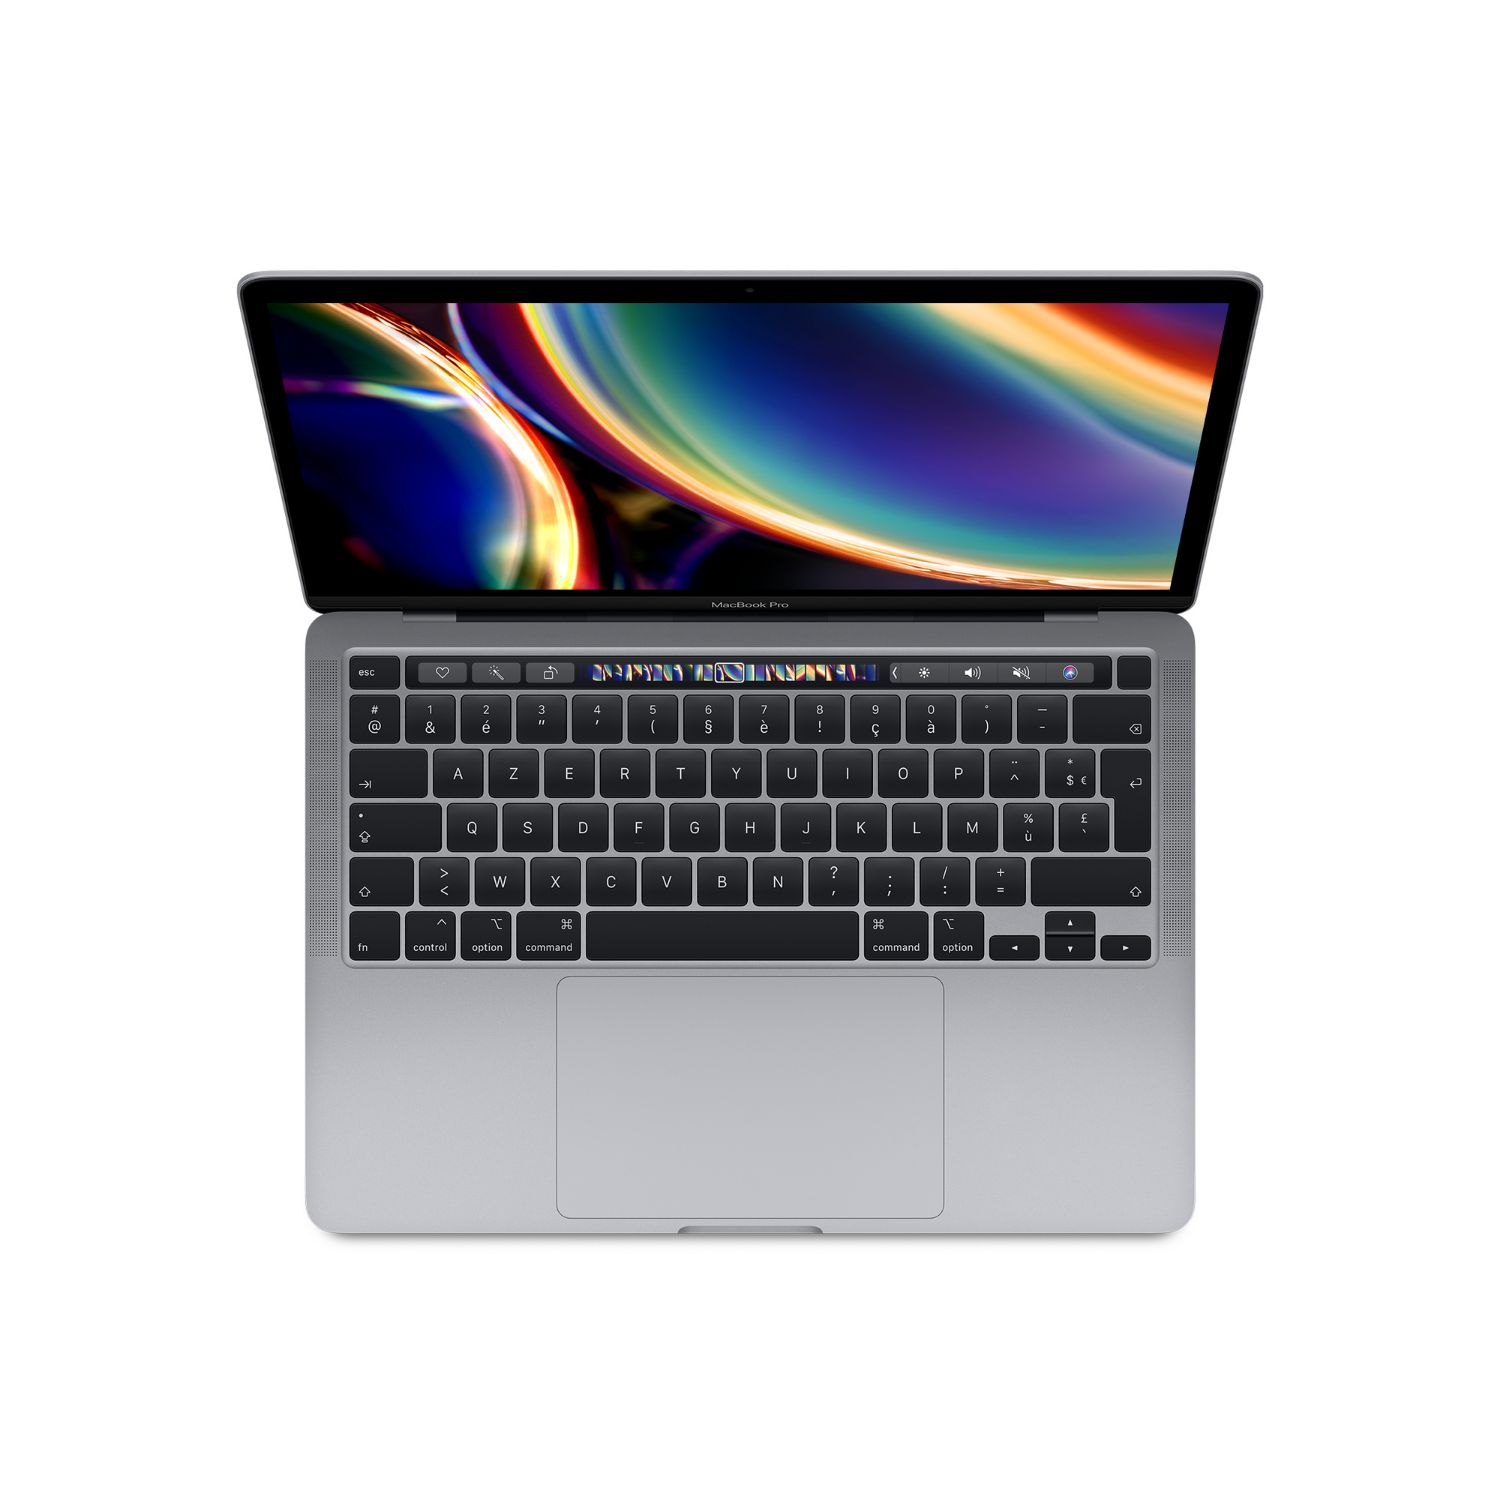 MWP42Y/A - Apple MacBook Pro 13.3